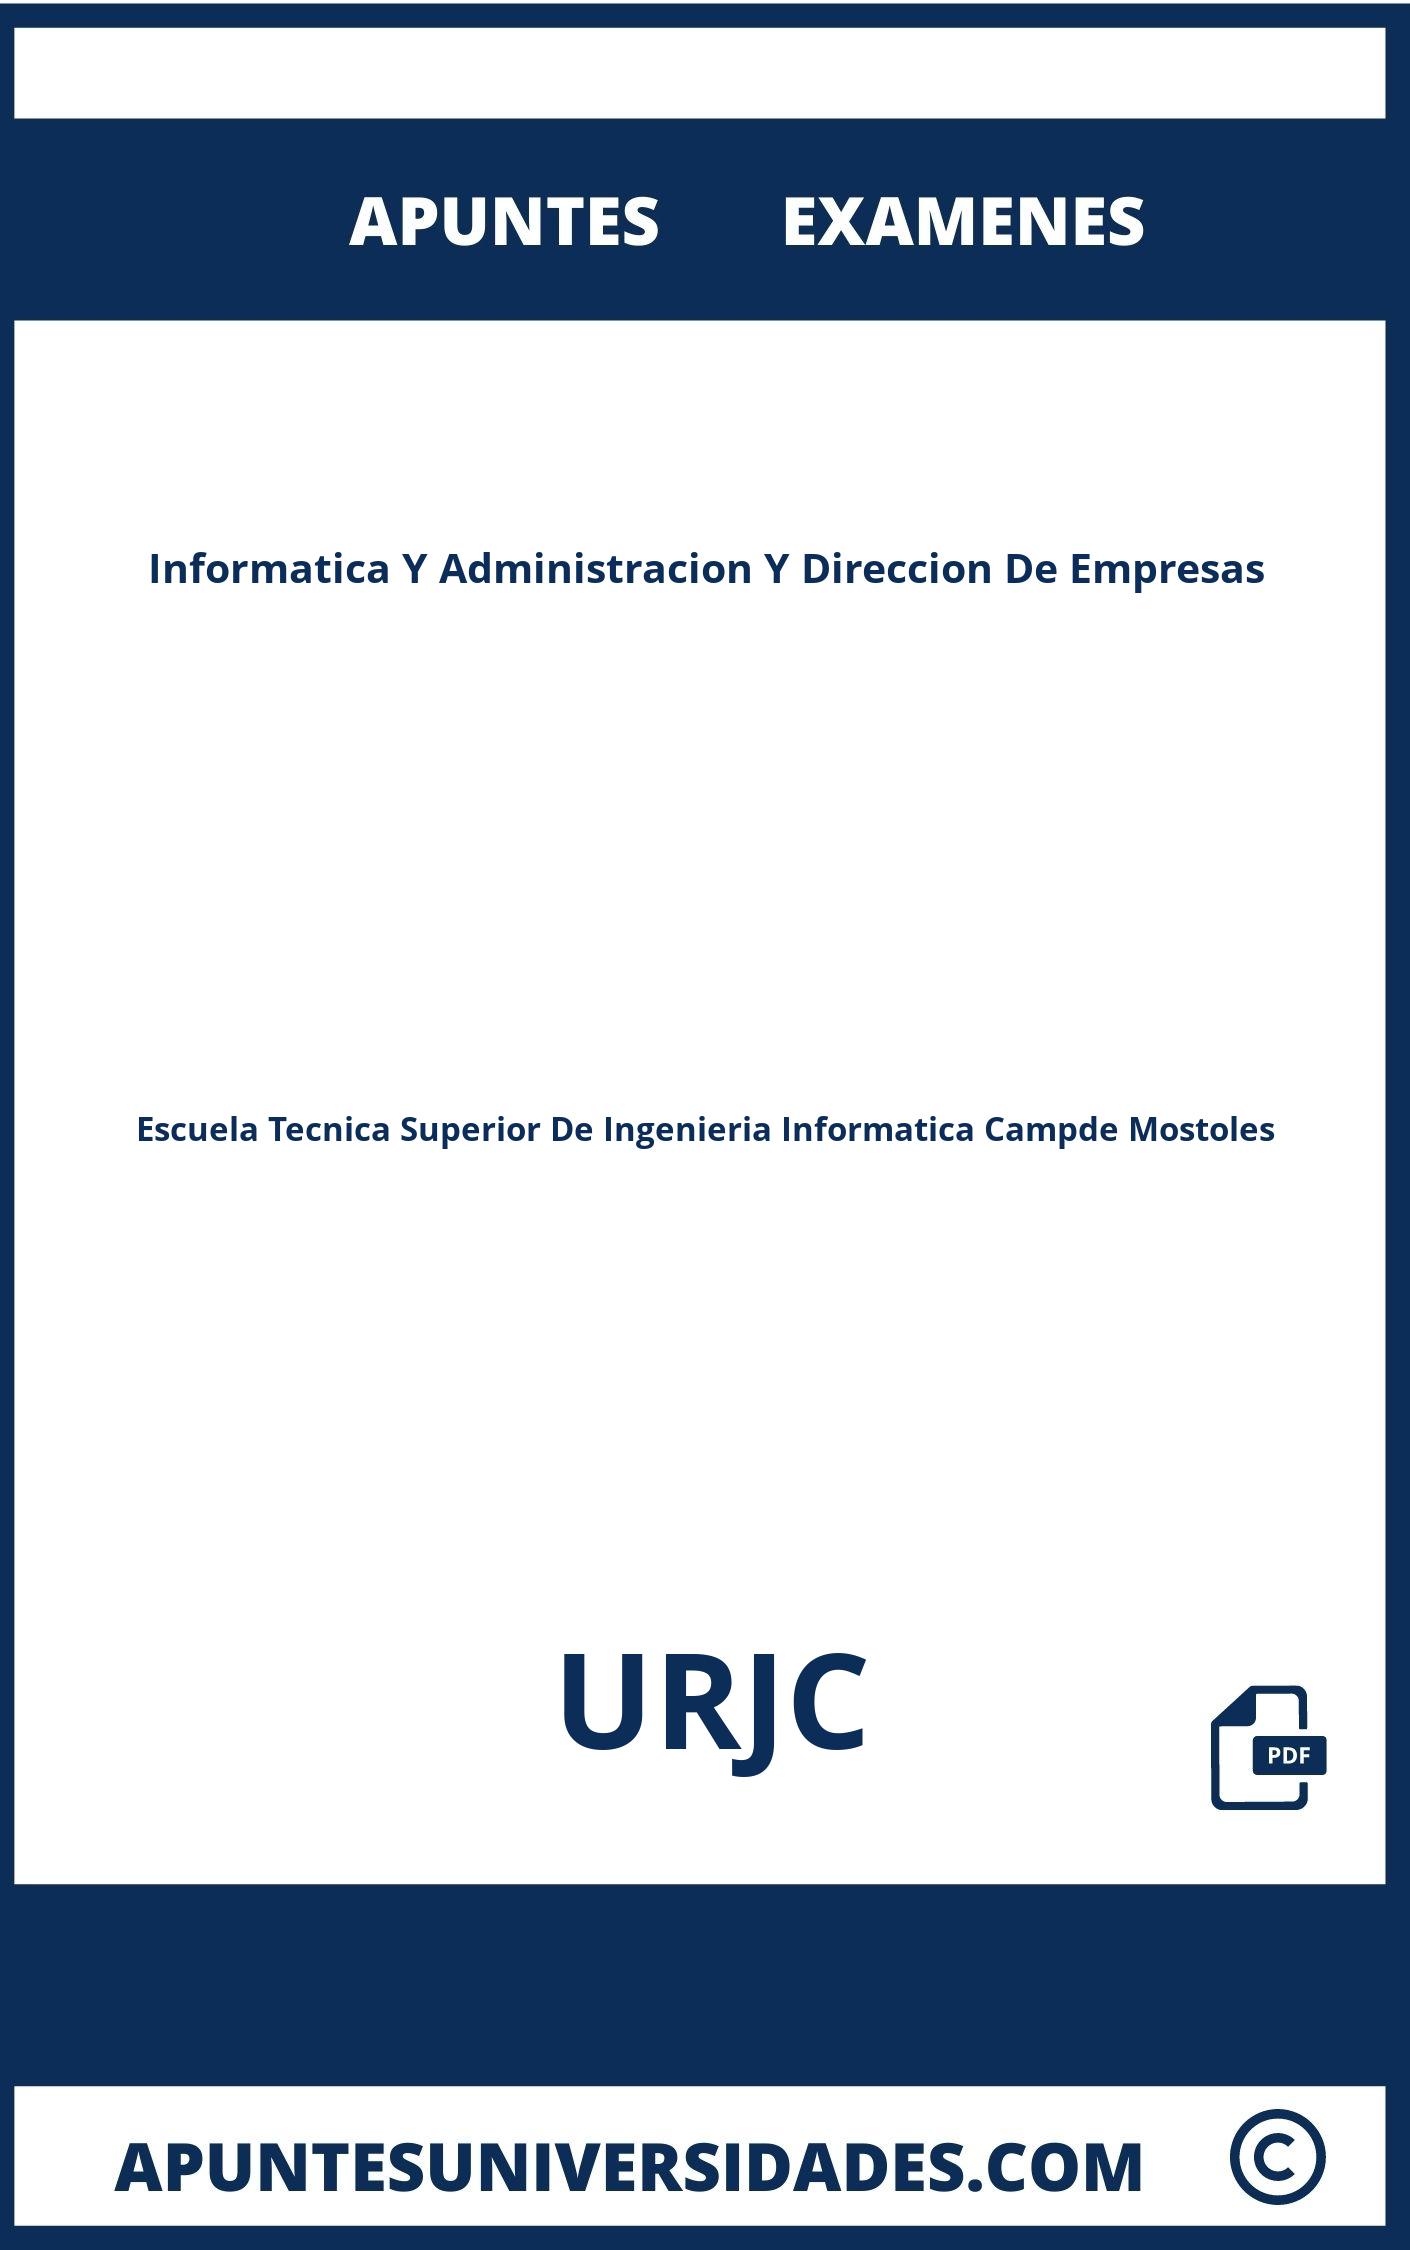 Informatica Y Administracion Y Direccion De Empresas URJC Apuntes Examenes